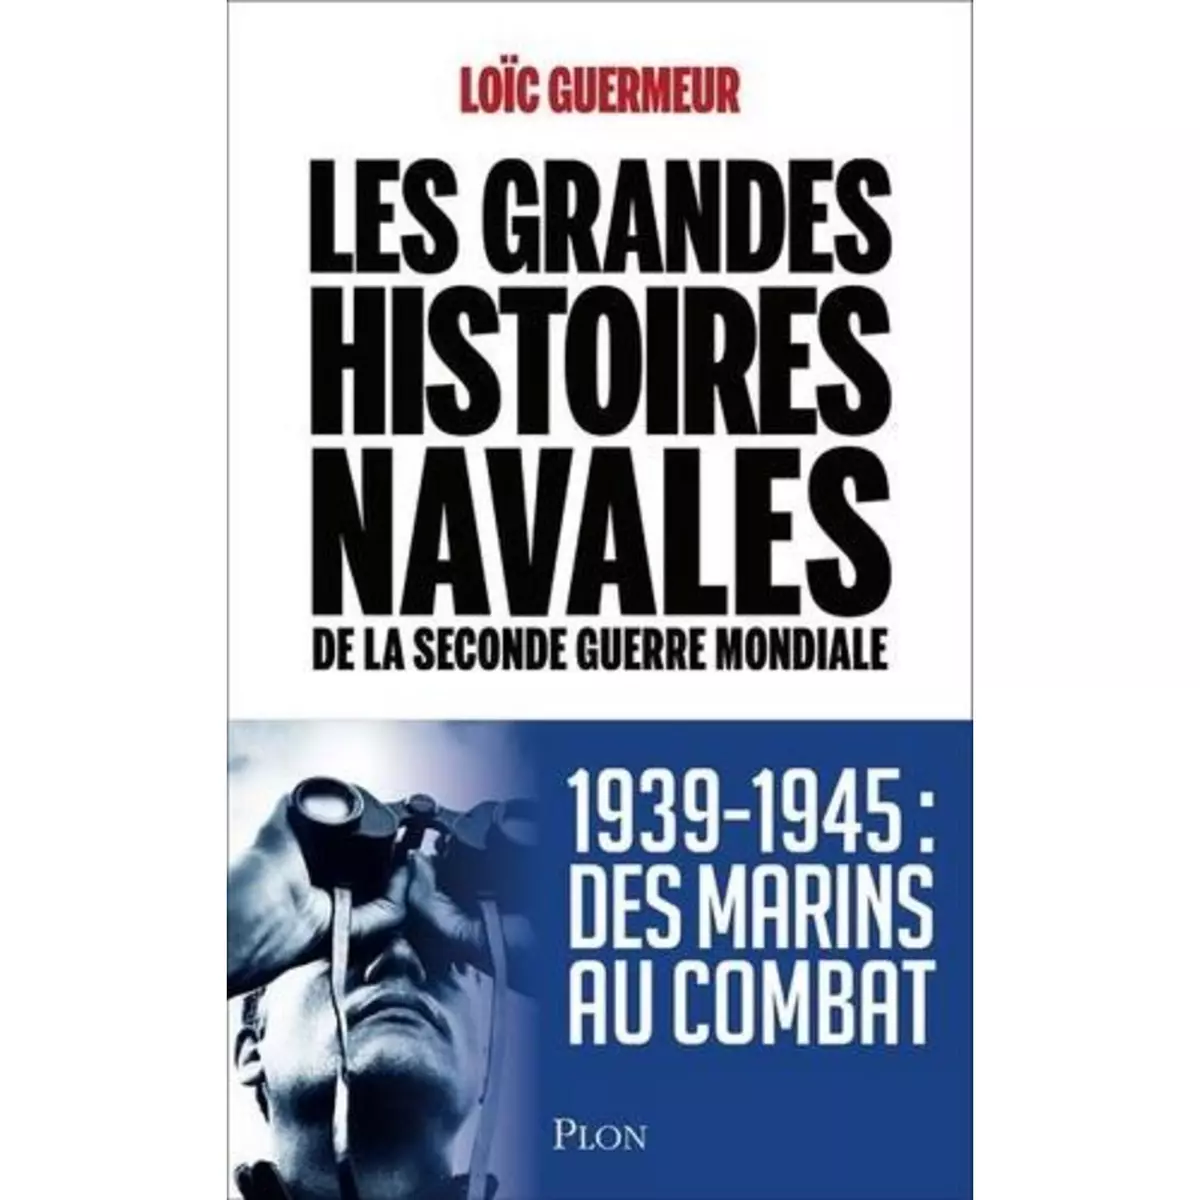  LES GRANDES HISTOIRES NAVALES DE LA SECONDE GUERRE MONDIALE, Guermeur Loïc